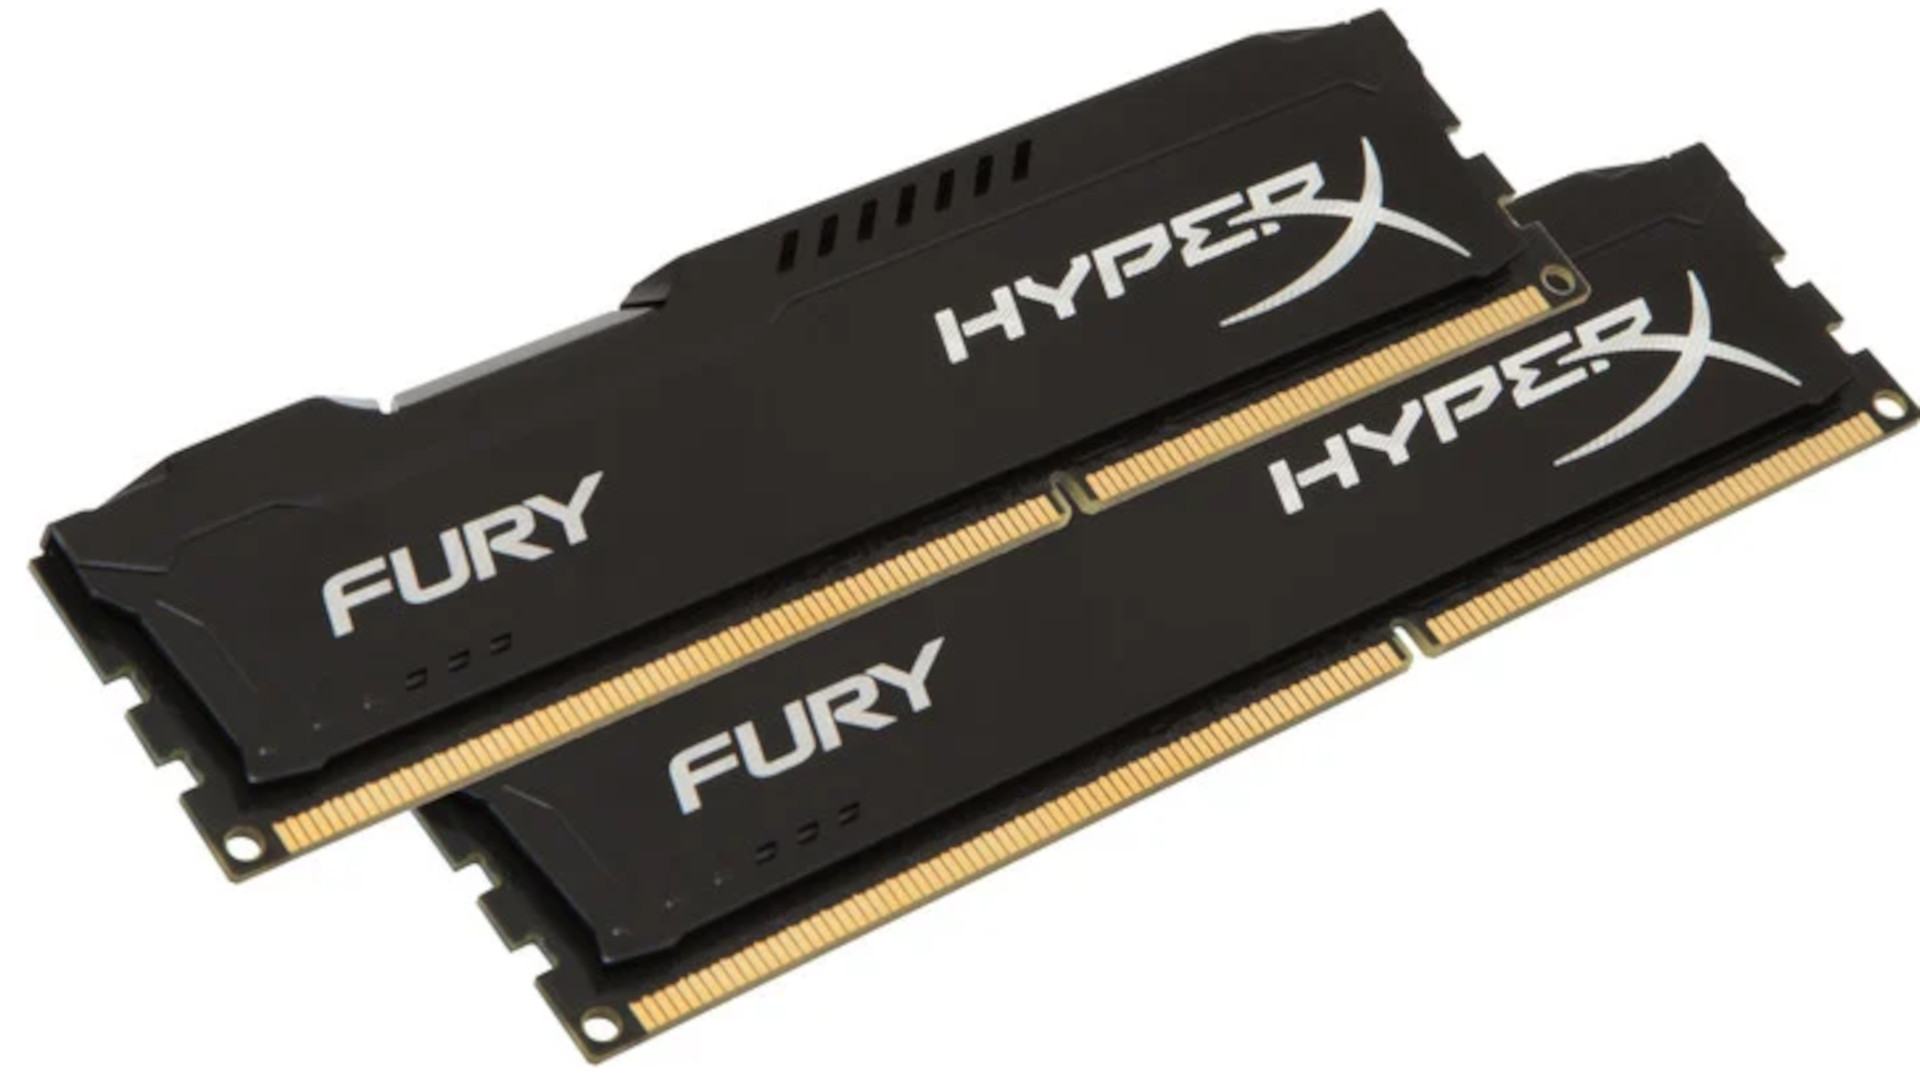 HyperX Fury DDR4 2133 C14 2x8GB 3